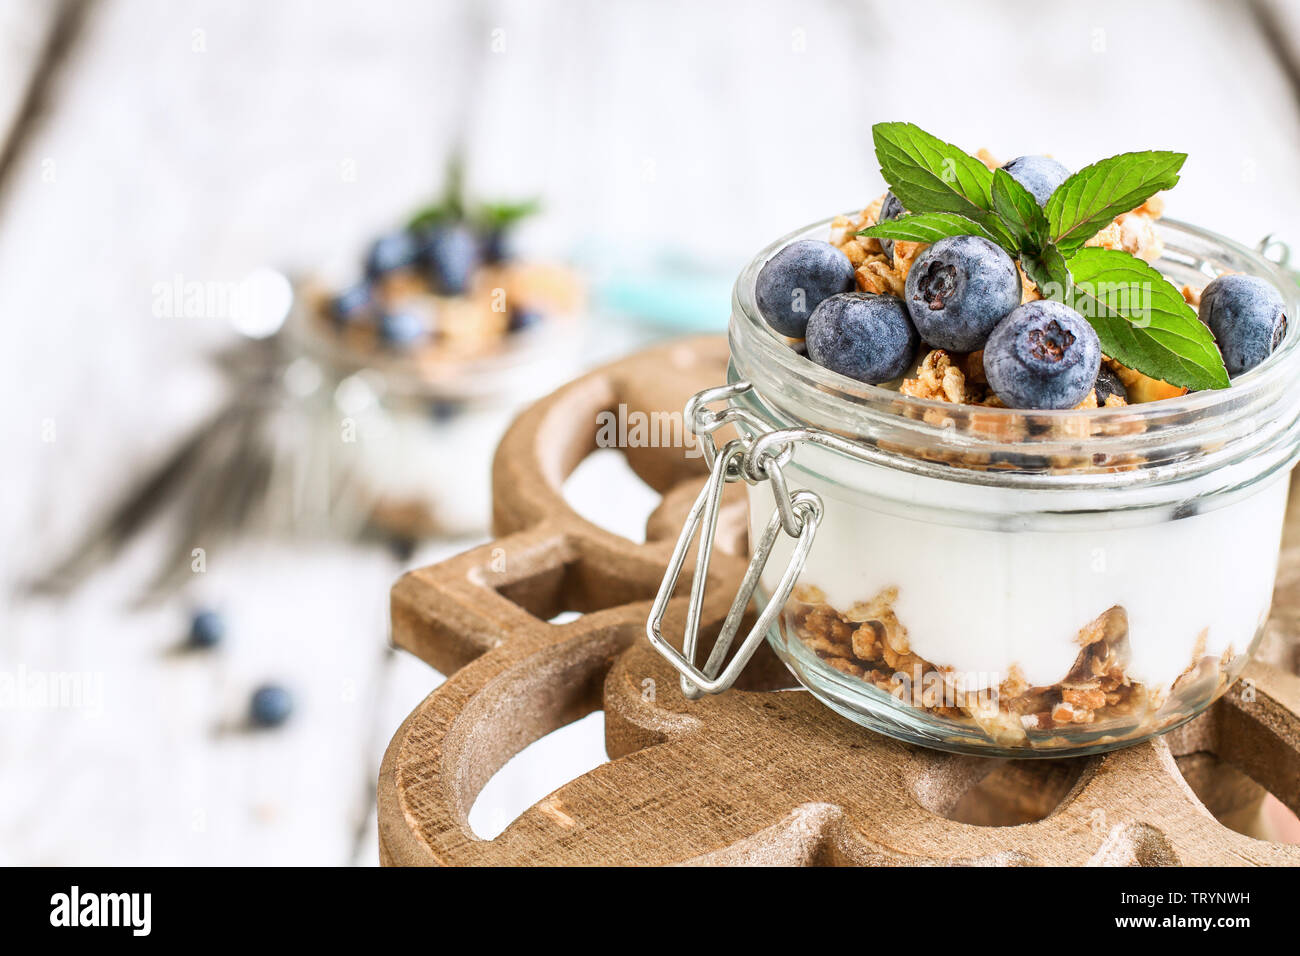 Gesundes Frühstück der Blaubeere parfaits mit frischem Obst, Joghurt, Müsli und Minze über einen rustikalen Kuchen stehen. Selektive konzentrieren. Stockfoto